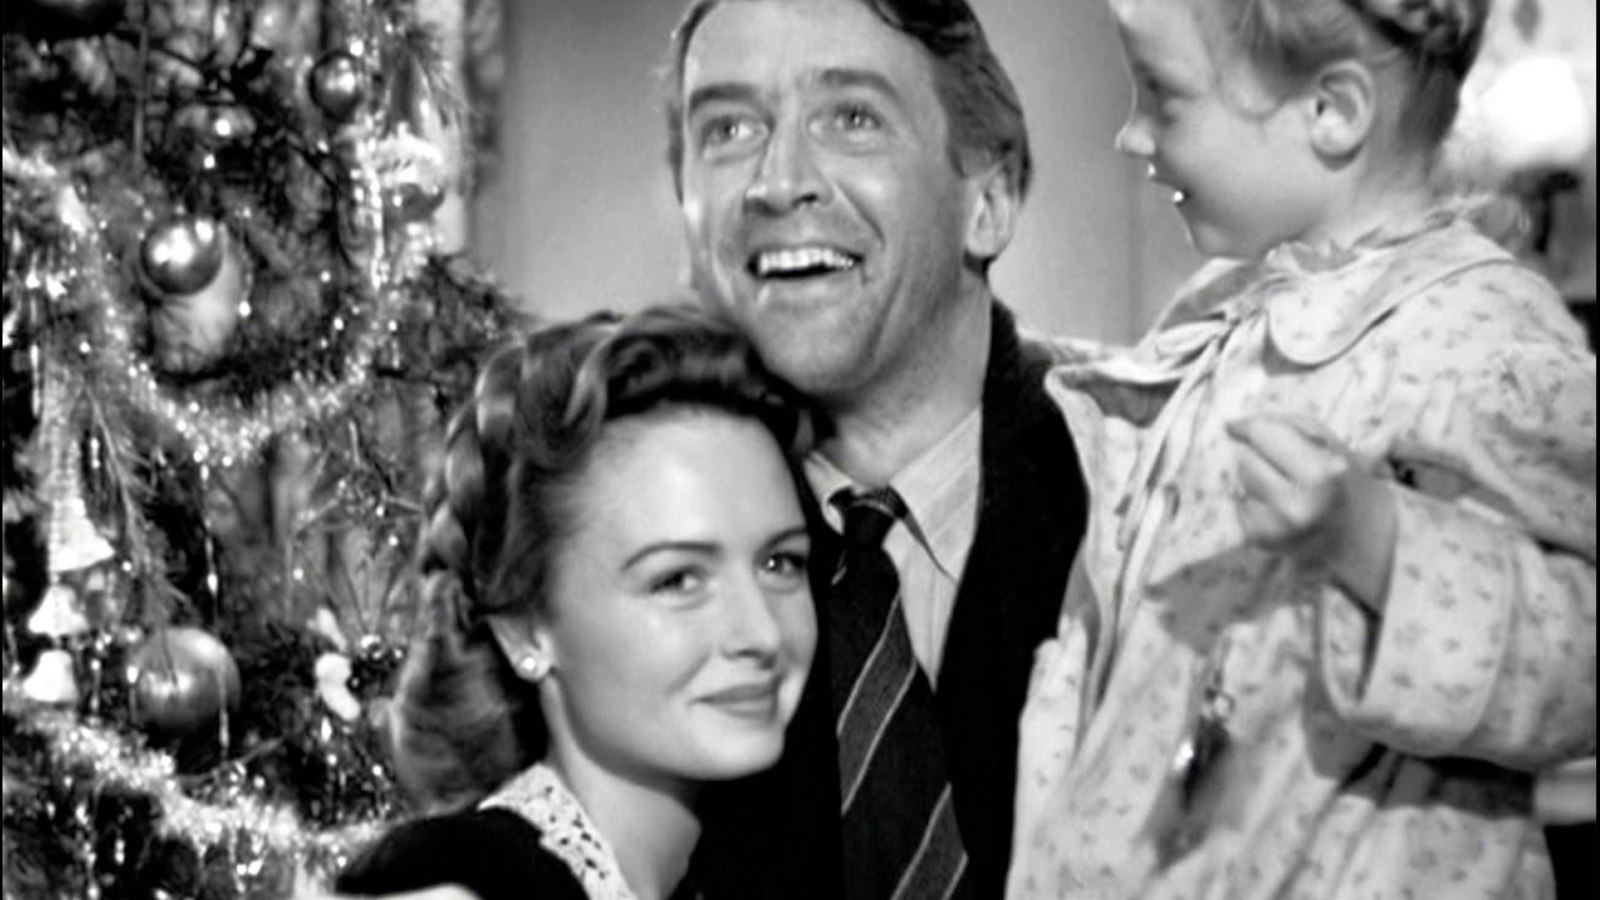 Clásico. Qué bello es vivir, es una cinta de George Bailey que recuerda el espíritu de la navidad en su máximo esplendor y bondad.